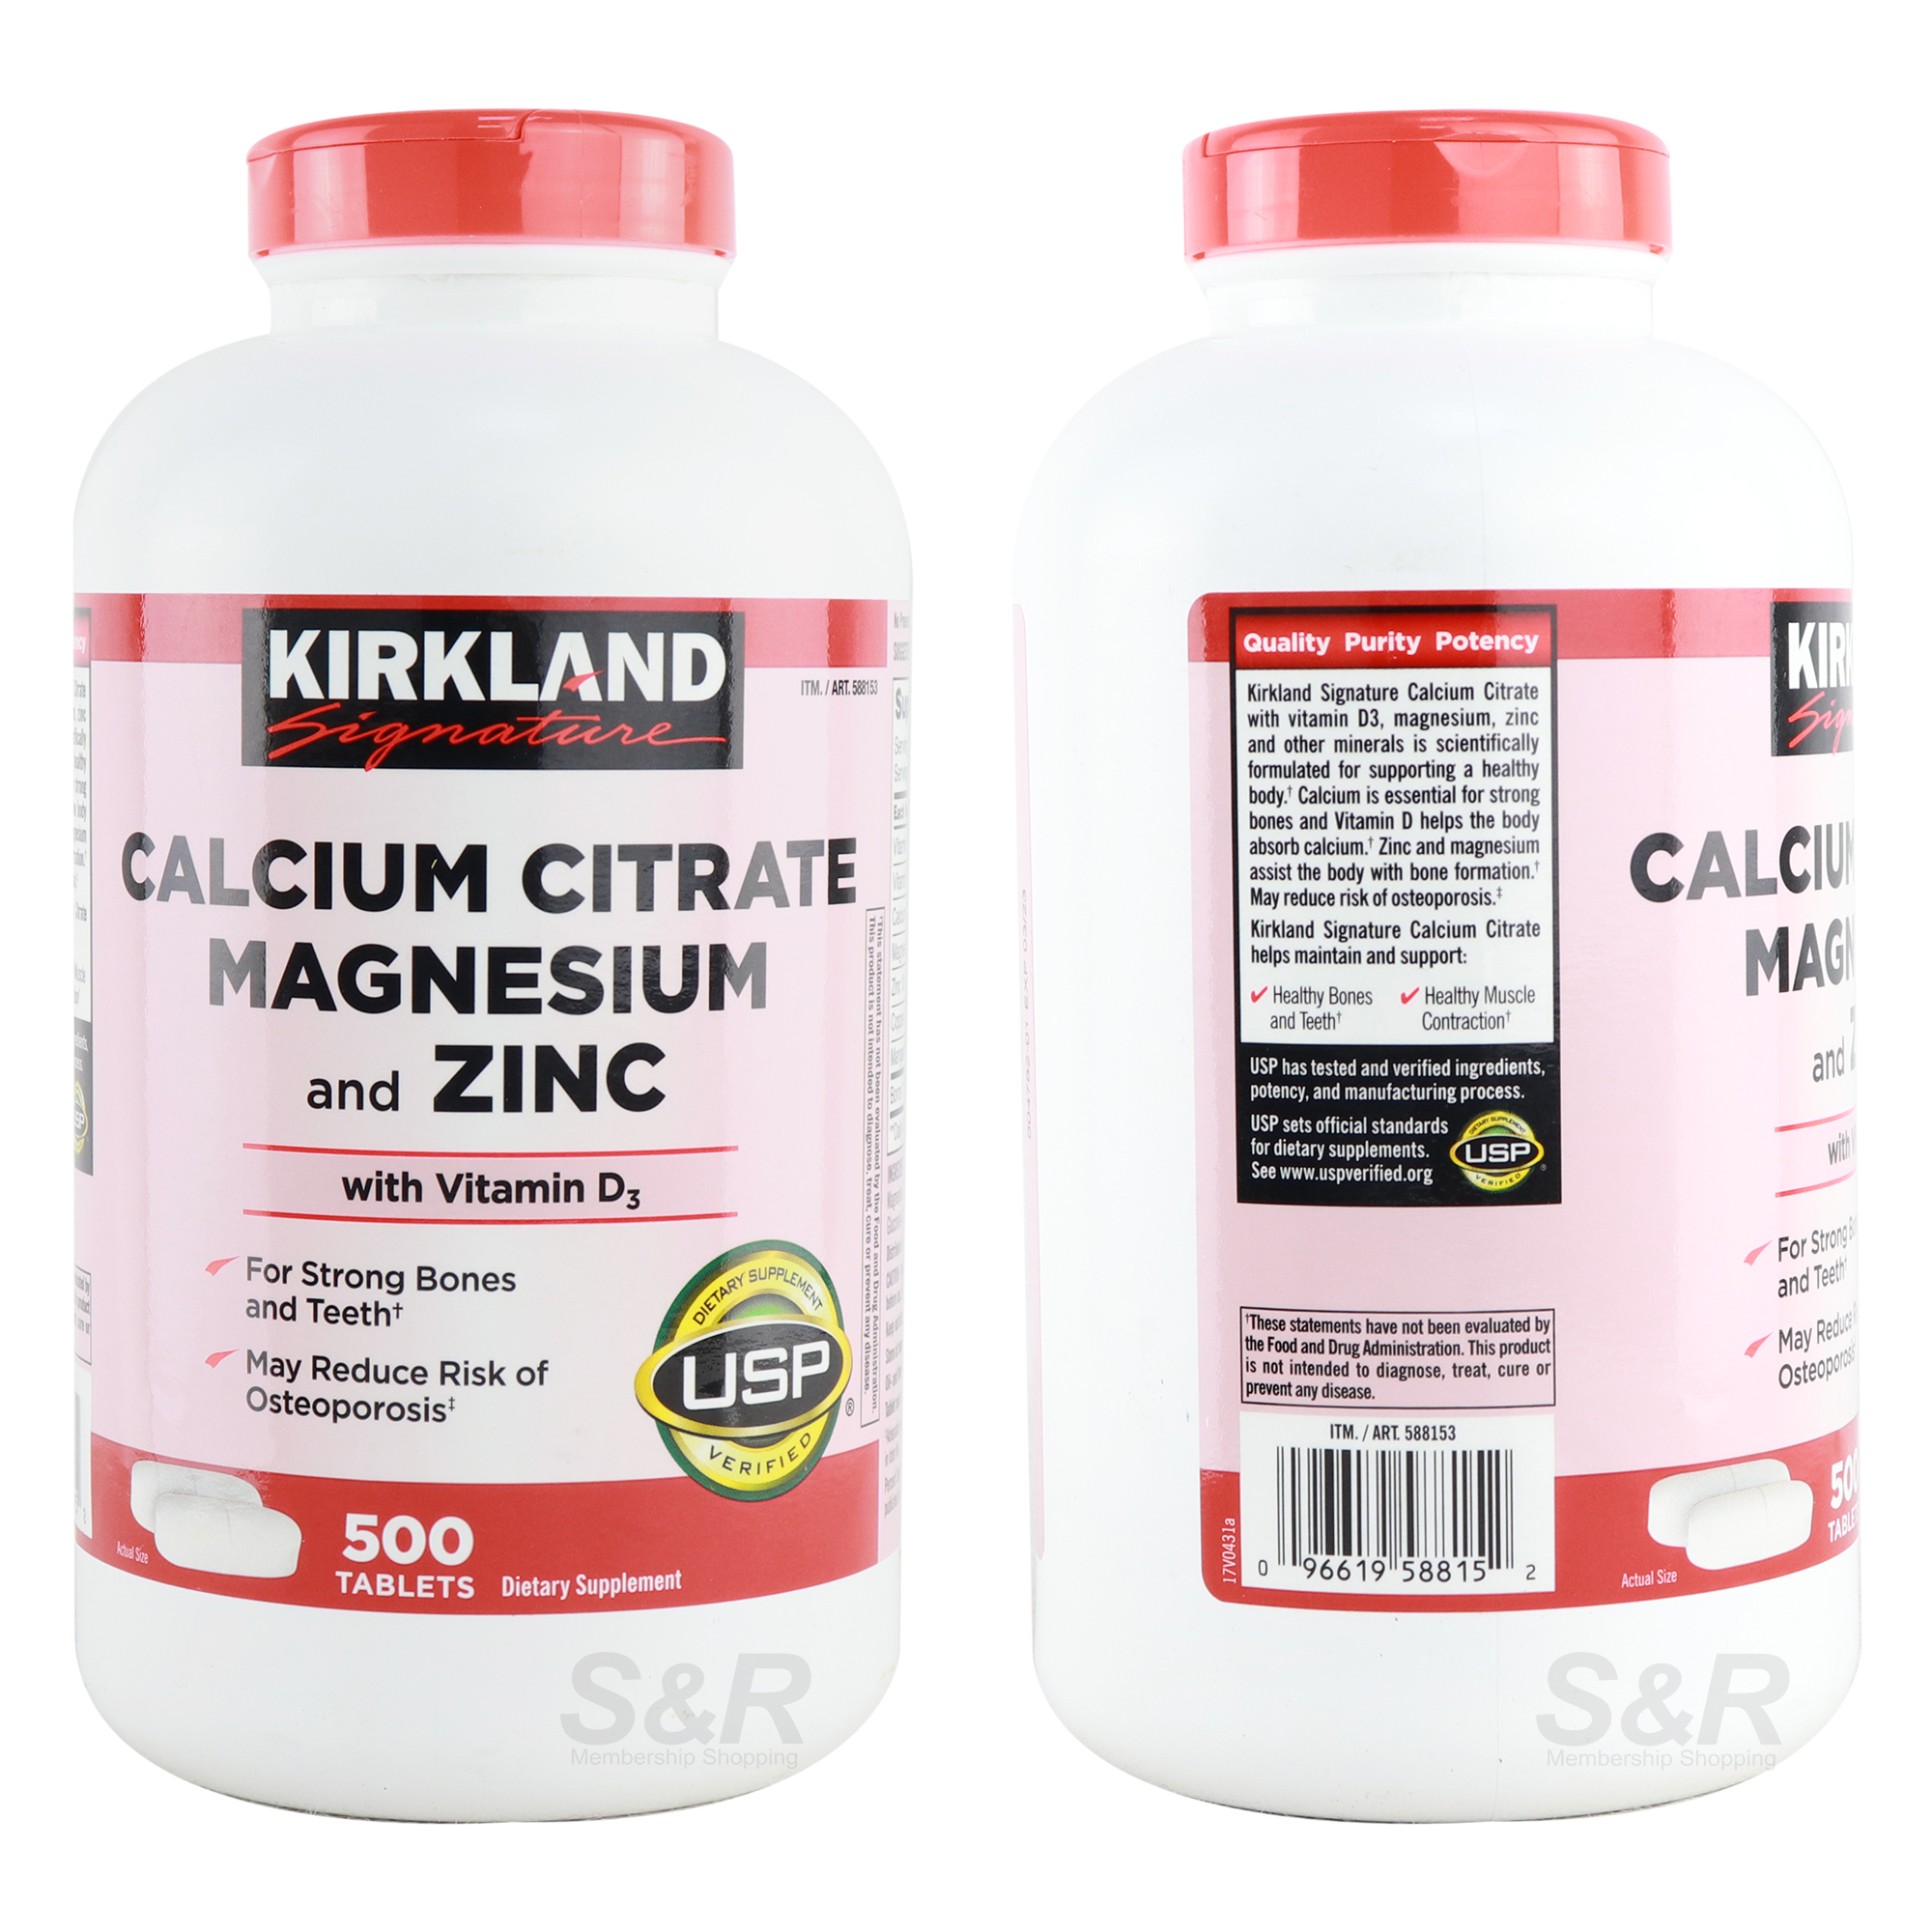 Calcium Citrate Magnesium and Zinc Vitamins